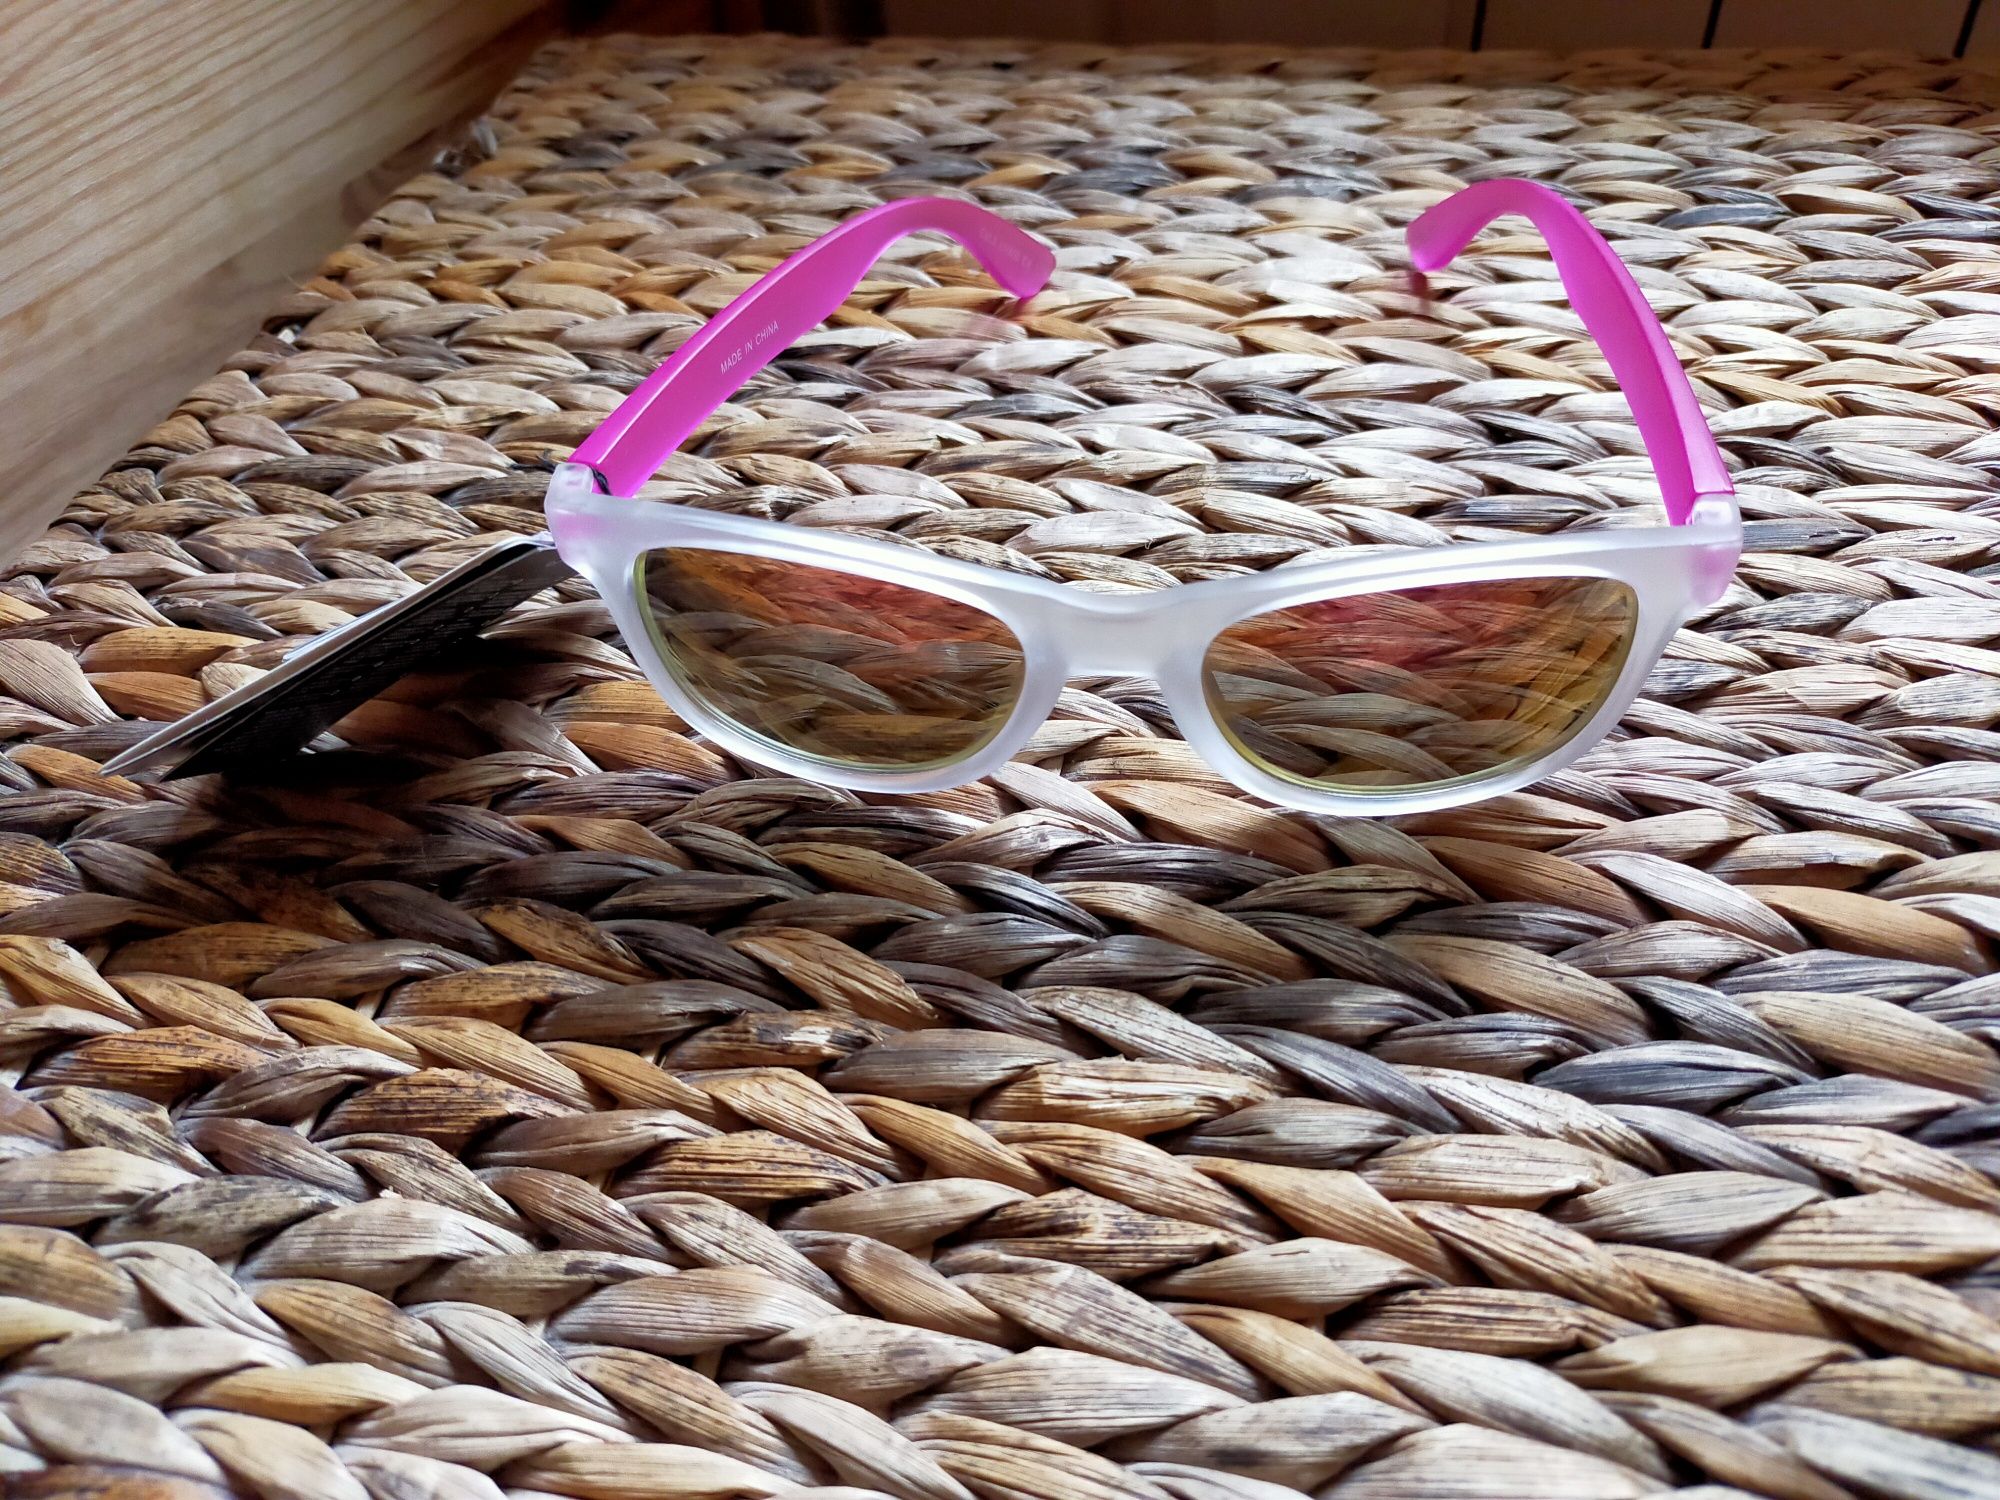 Nowe różowe okulary przeciwsłoneczne firmy Cropp